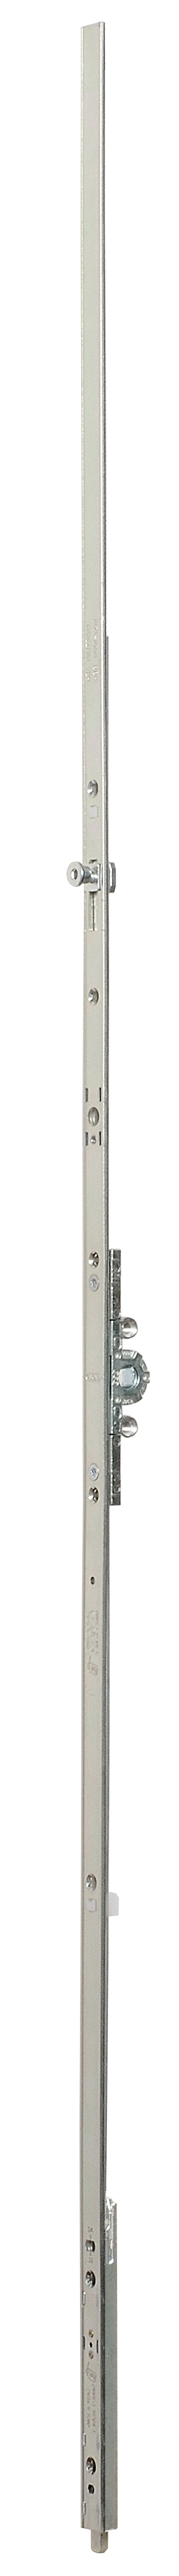 AGB -  Cremonese ARTECH anta a bandiera altezza maniglia fissa con puntale chiusura ad espansione per seconda anta - gr / dim. 01 - entrata 15 - alt. man. 170 - lbb/hbb 610 - 810